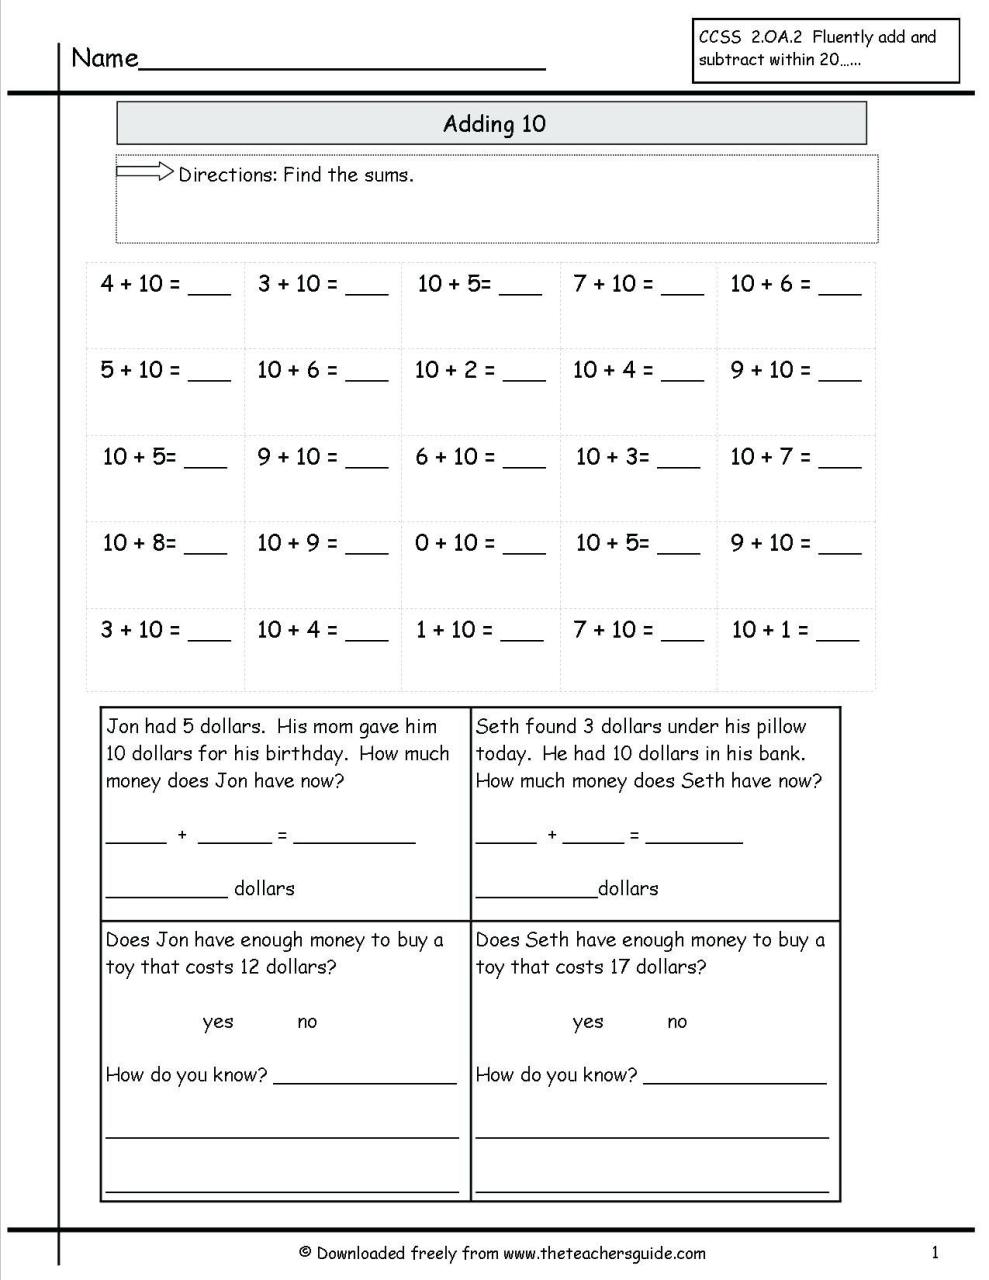 Balancing Equations Worksheet Answer Key 1-10